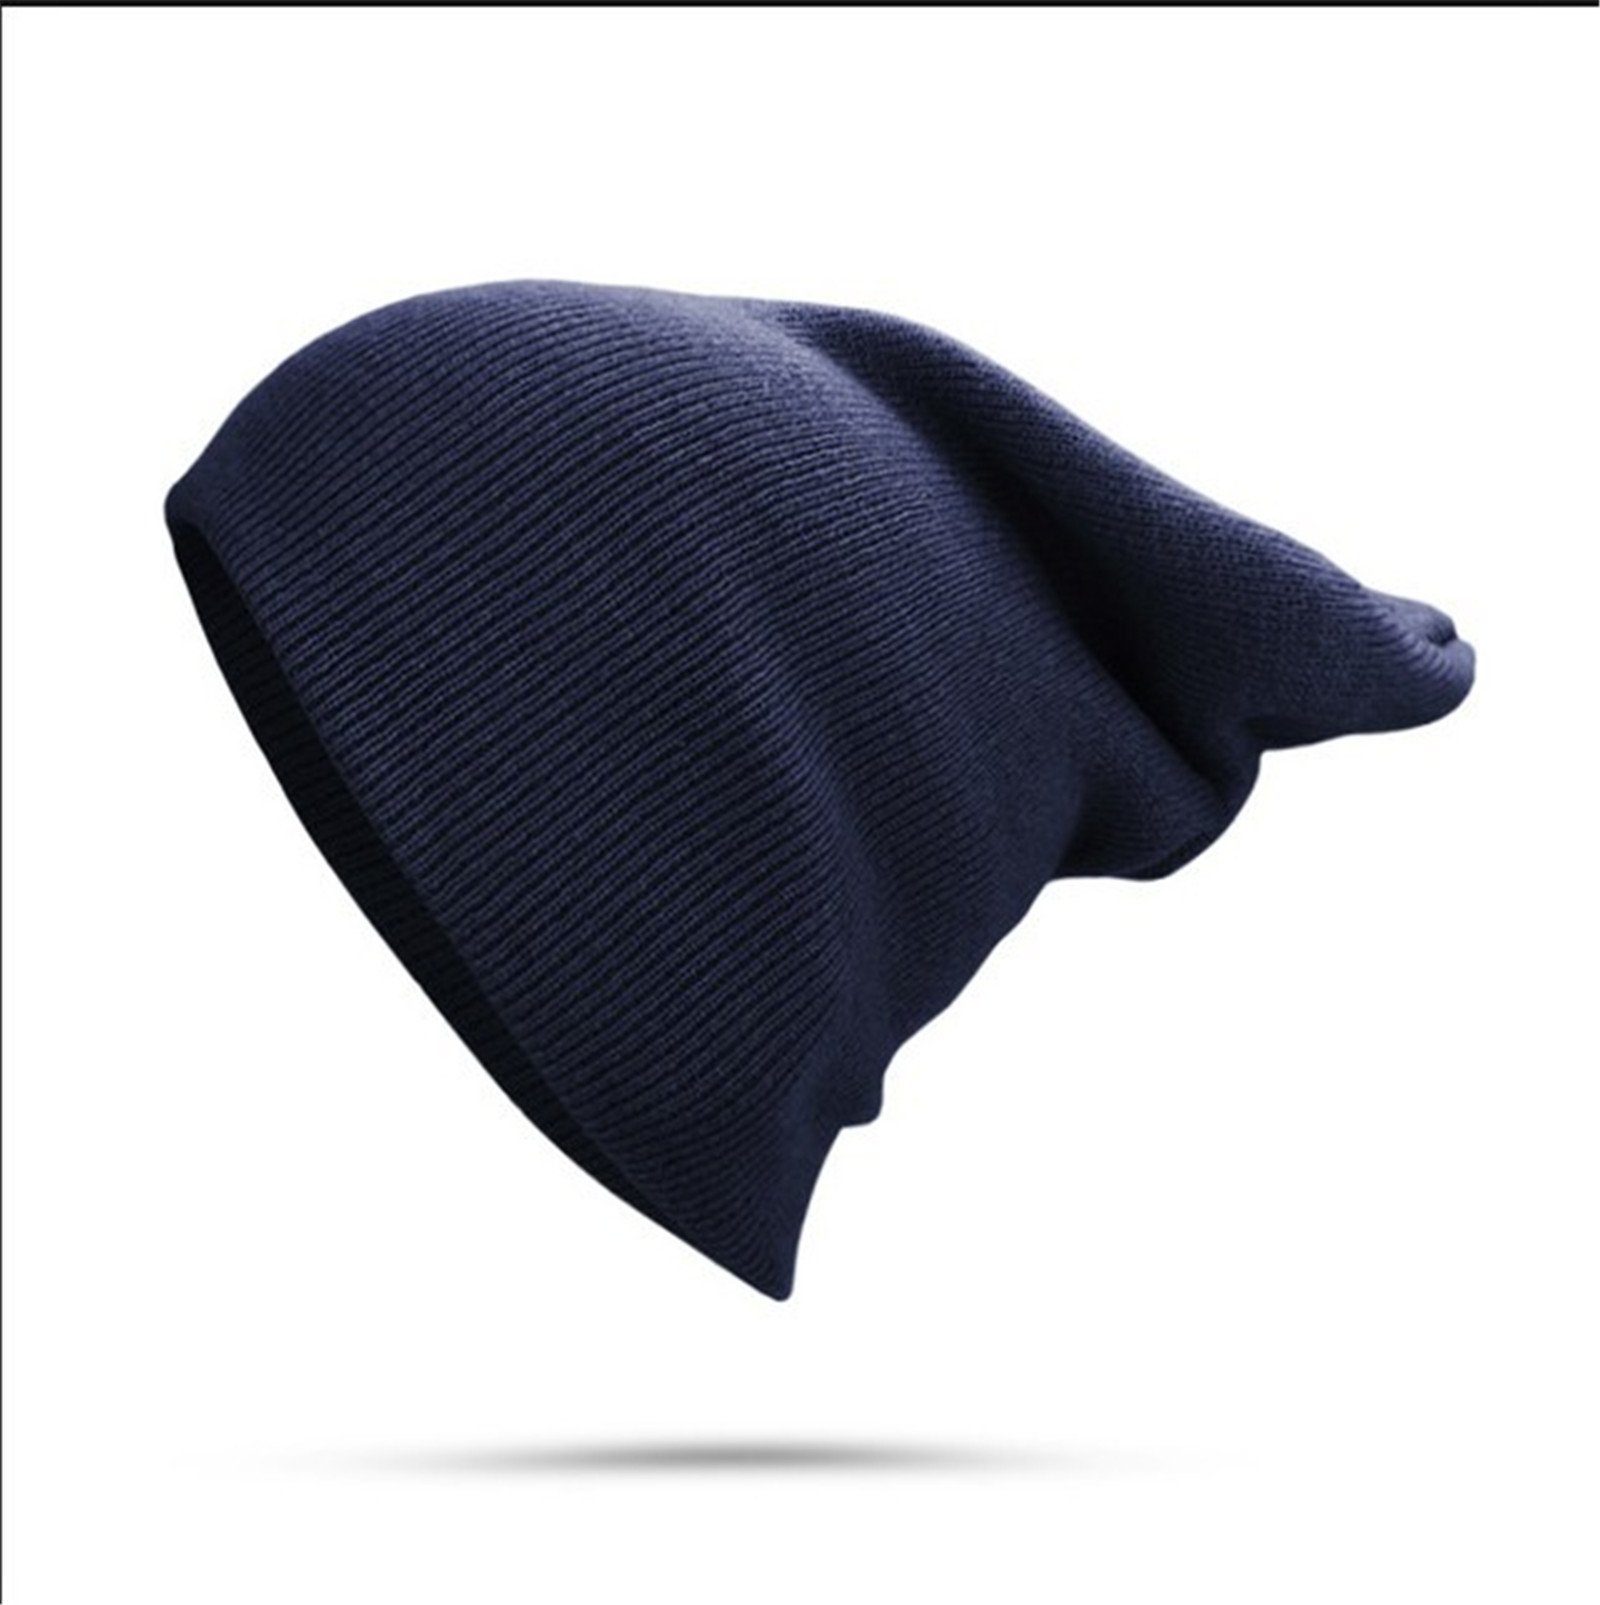 Blusmart Strickmütze Mütze Für Damen Und Herren, Unisex, Mit Bündchen, Einfarbig, Warm Navy blau